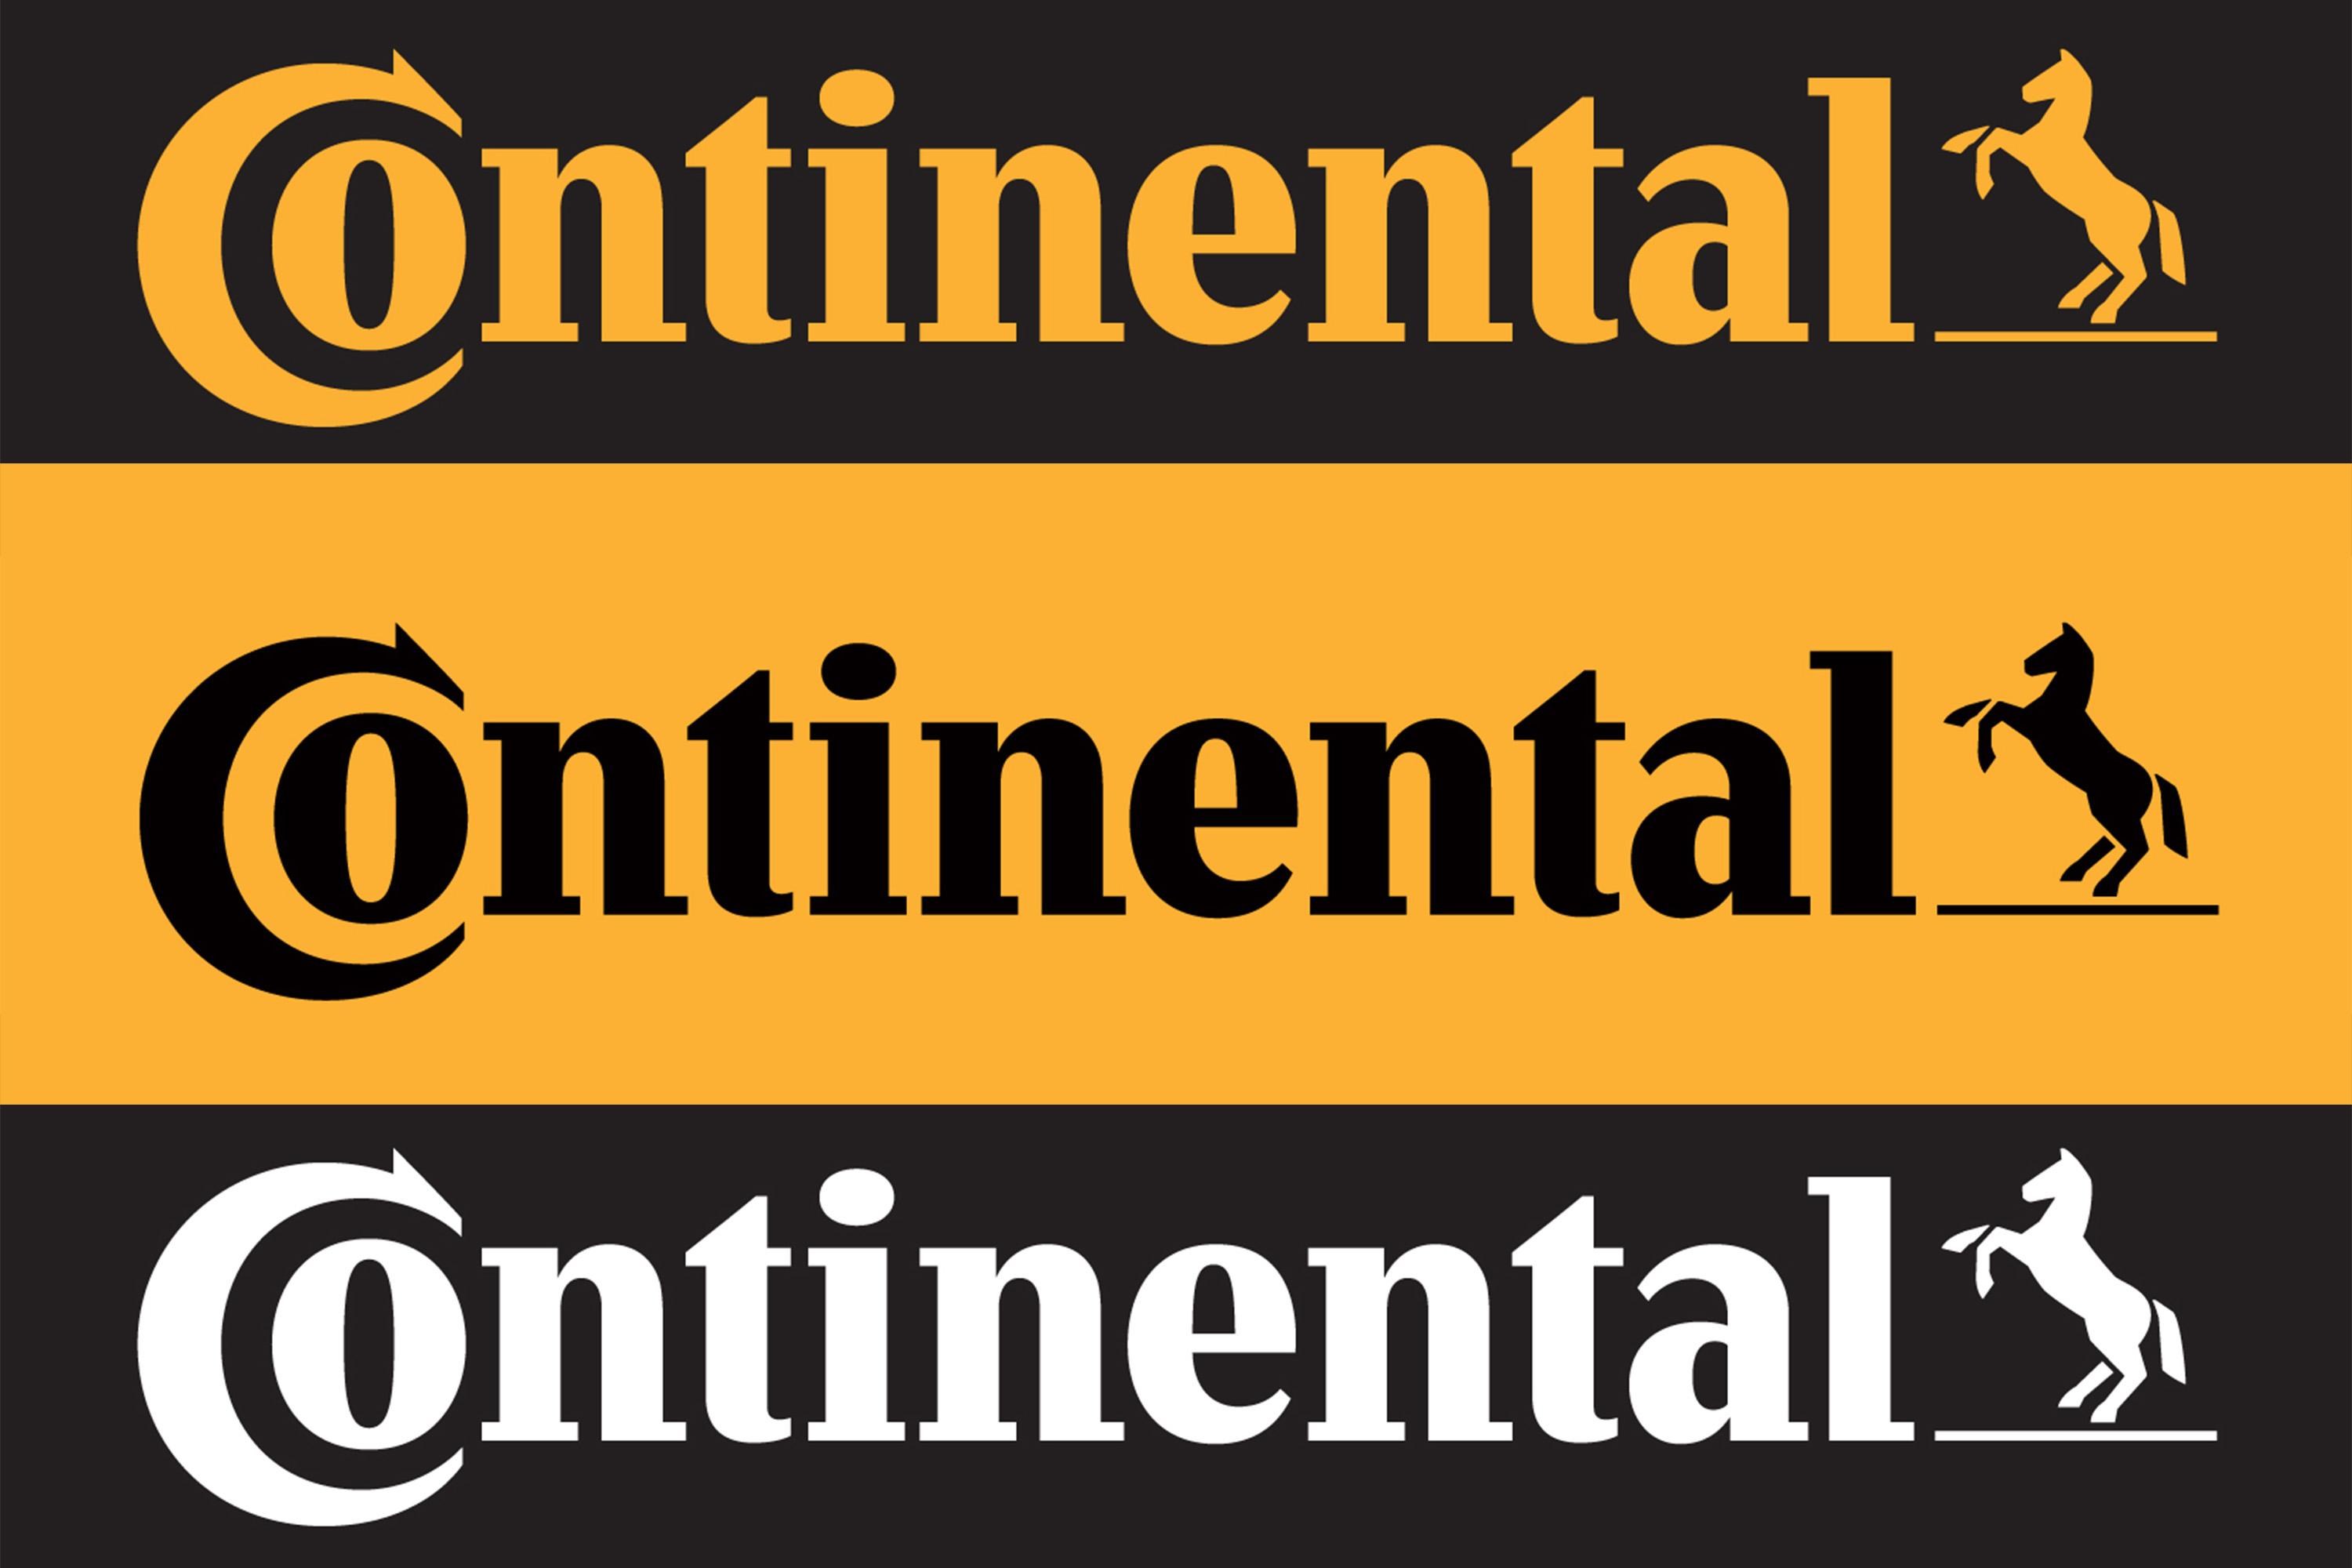 Continental işten çıkarmalara başlayacak